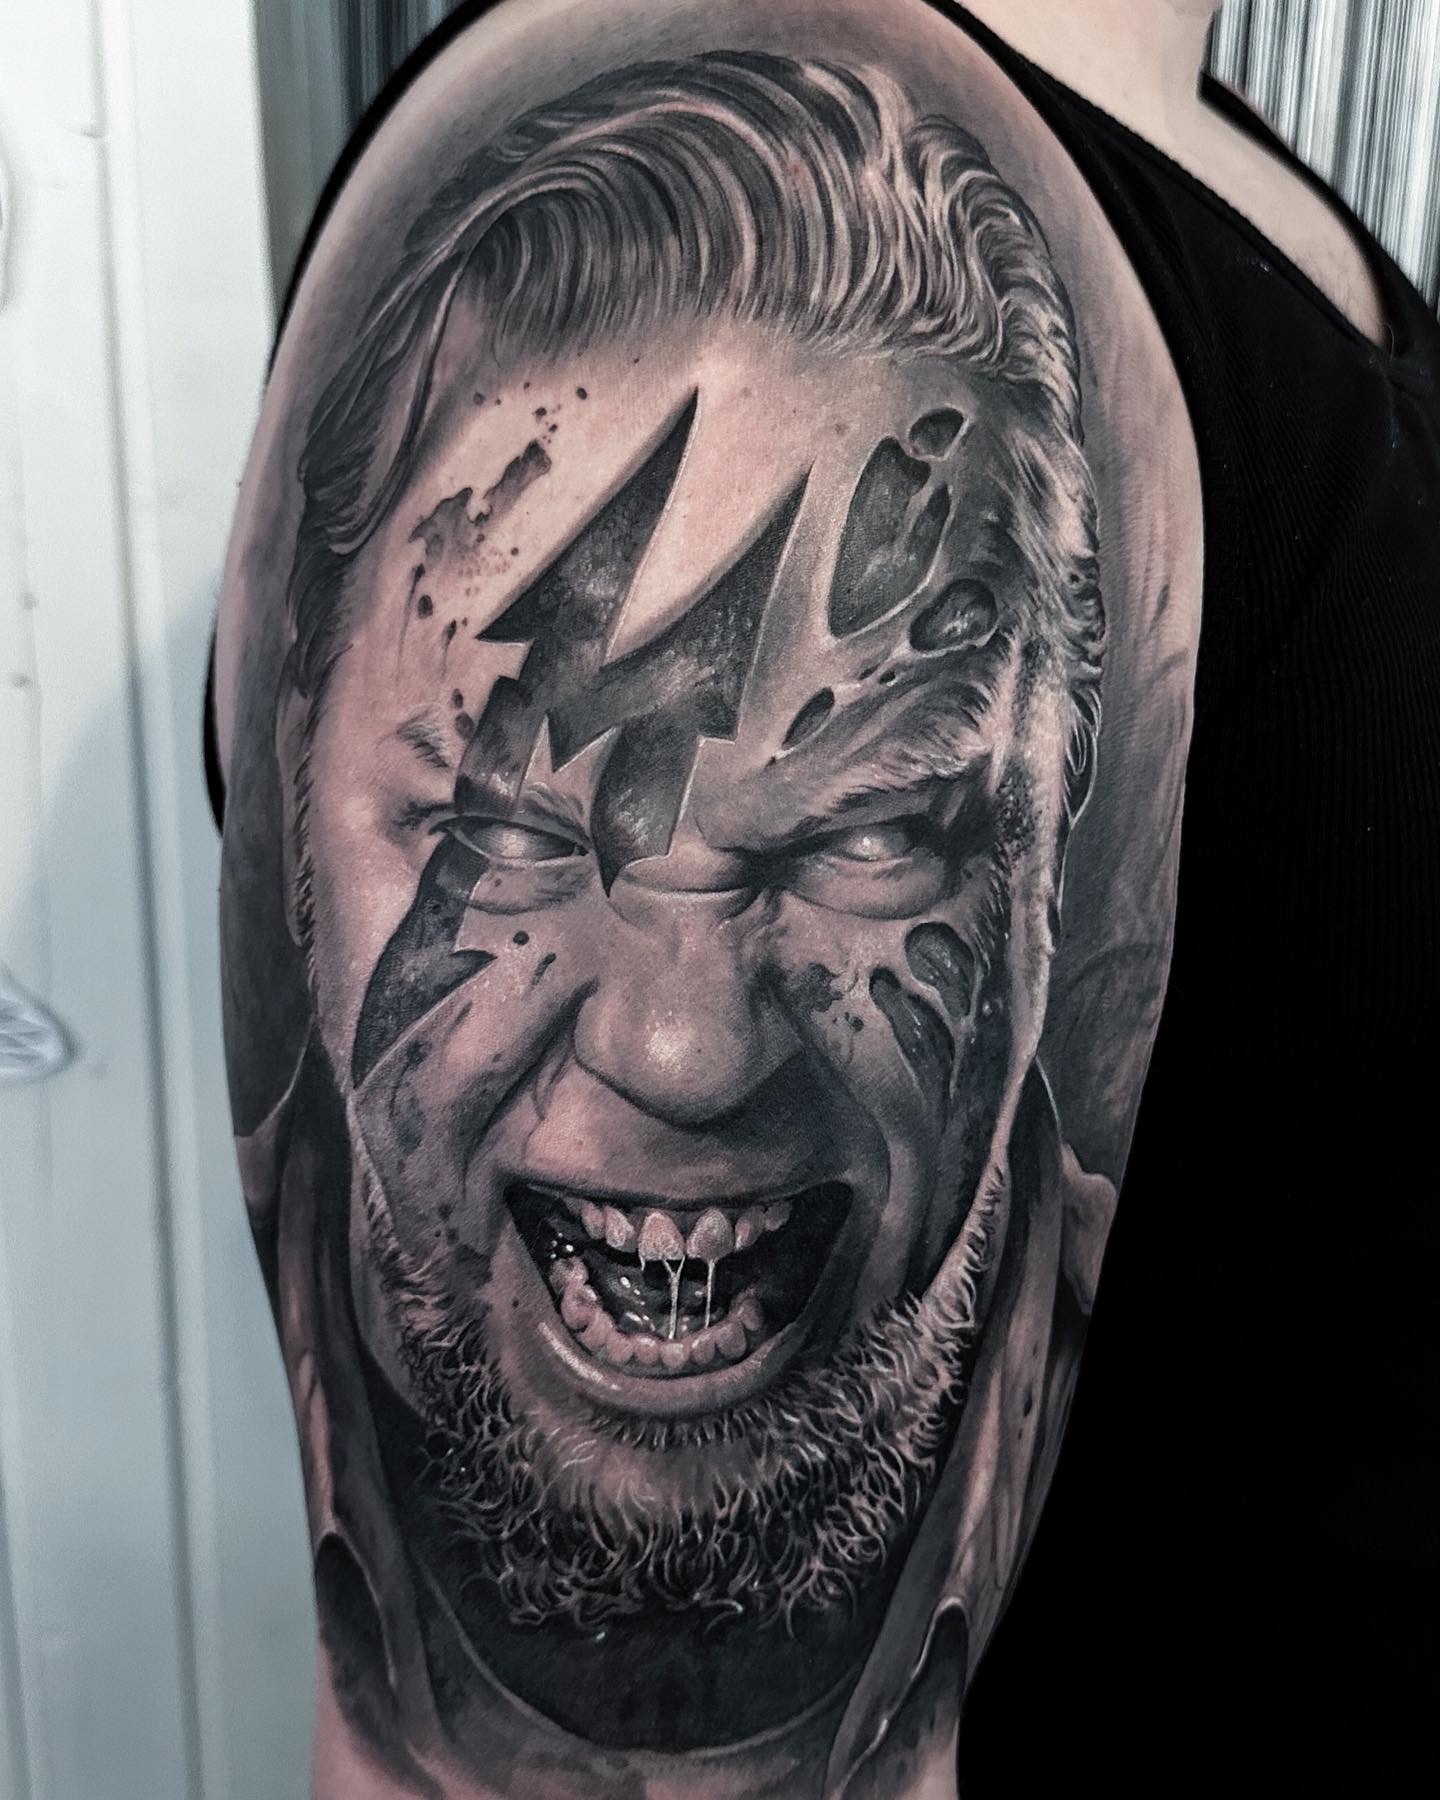 Metallica Tattoo